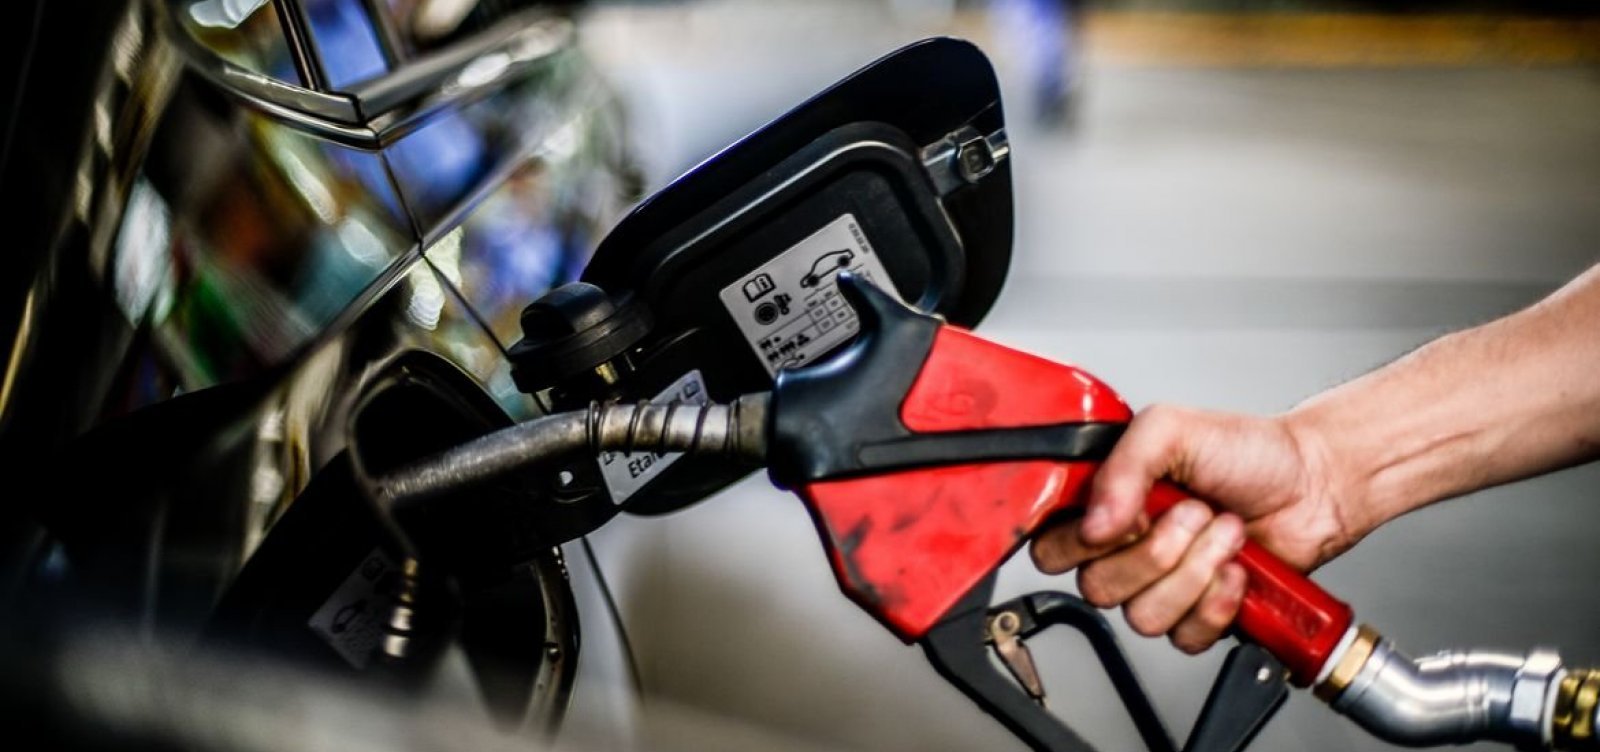 Gasolina chega a R$ 6,89 em Salvador, após reajuste das distribuidoras 